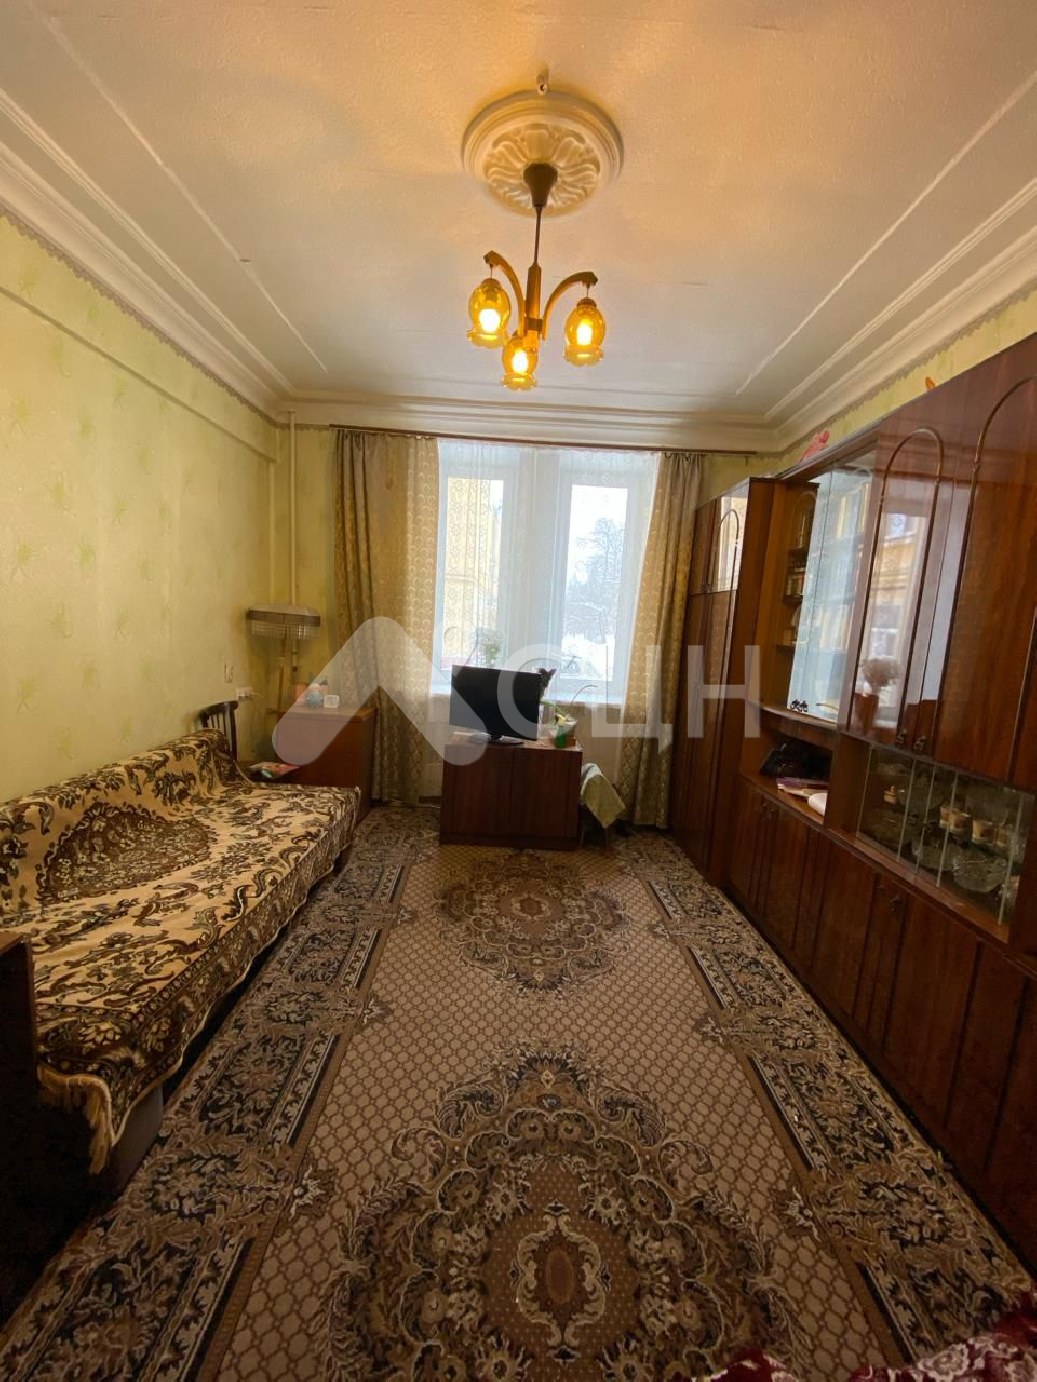 продать квартиру саров
: Г. Саров, Шевченко ул. д. 20, 3-комн квартира, этаж 1 из 3, продажа.